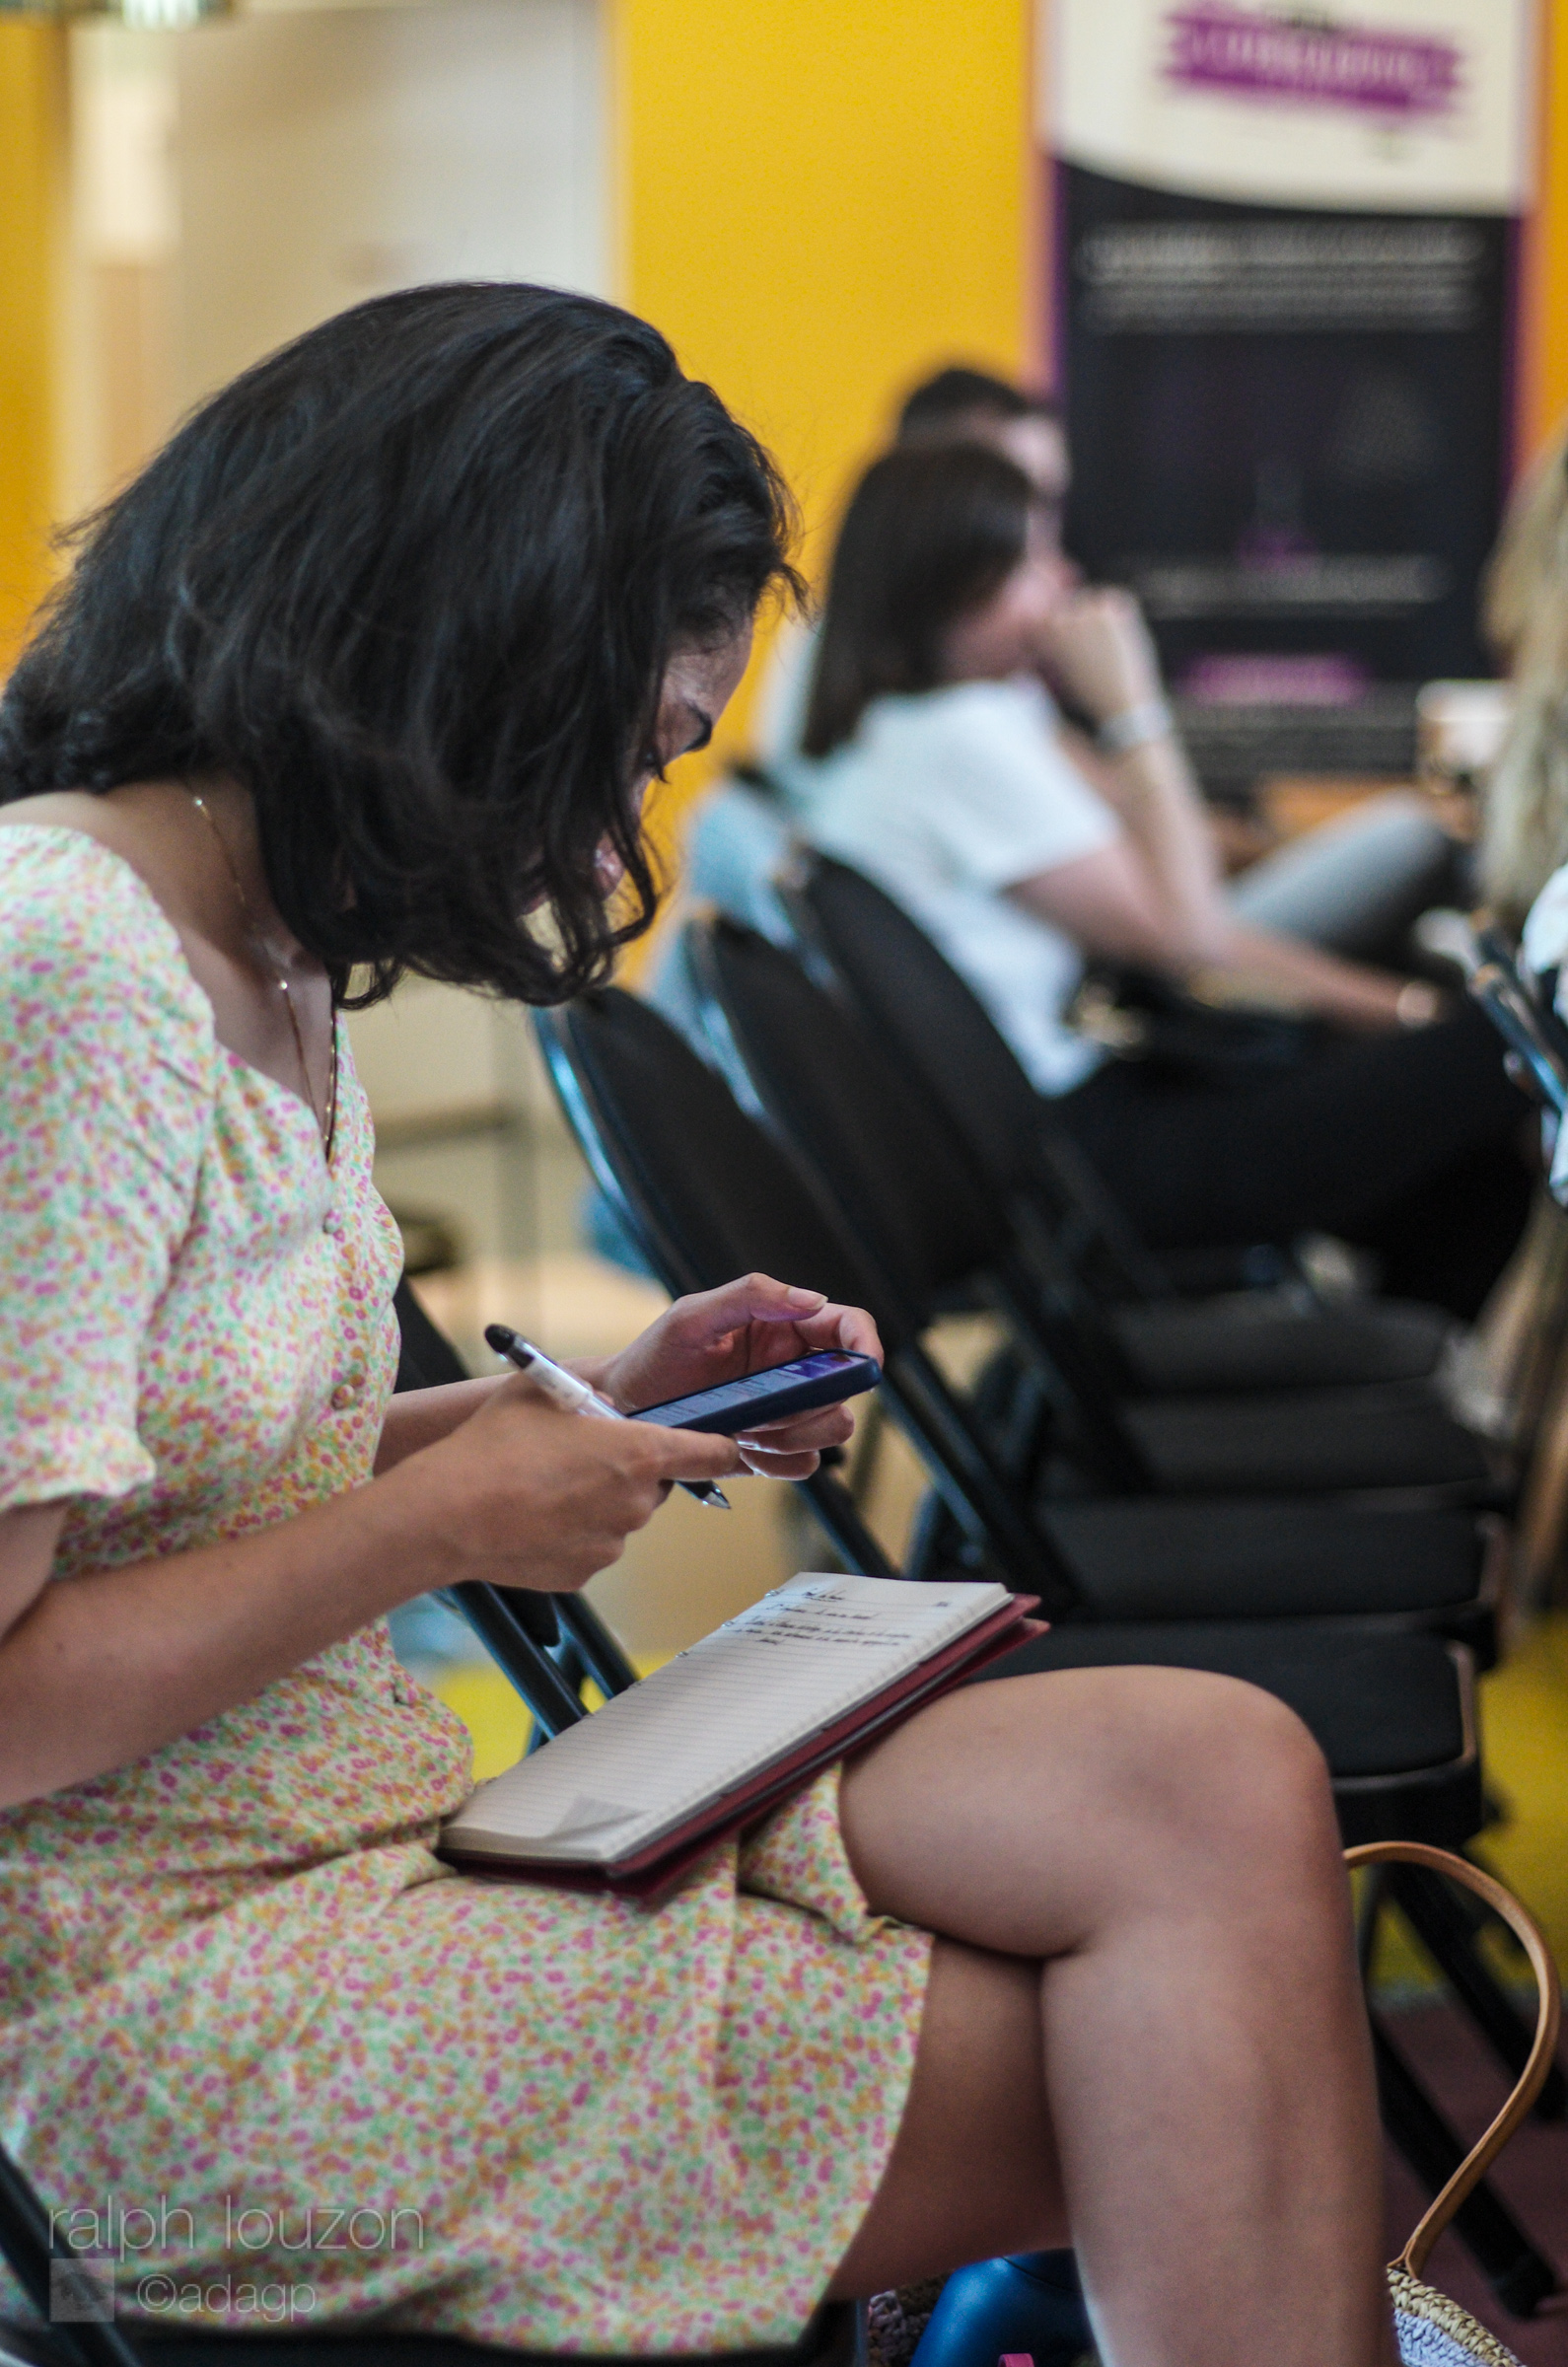 Une femme assise regarde son téléphone portable, un stylo dans la main et un carnet sur ses genoux